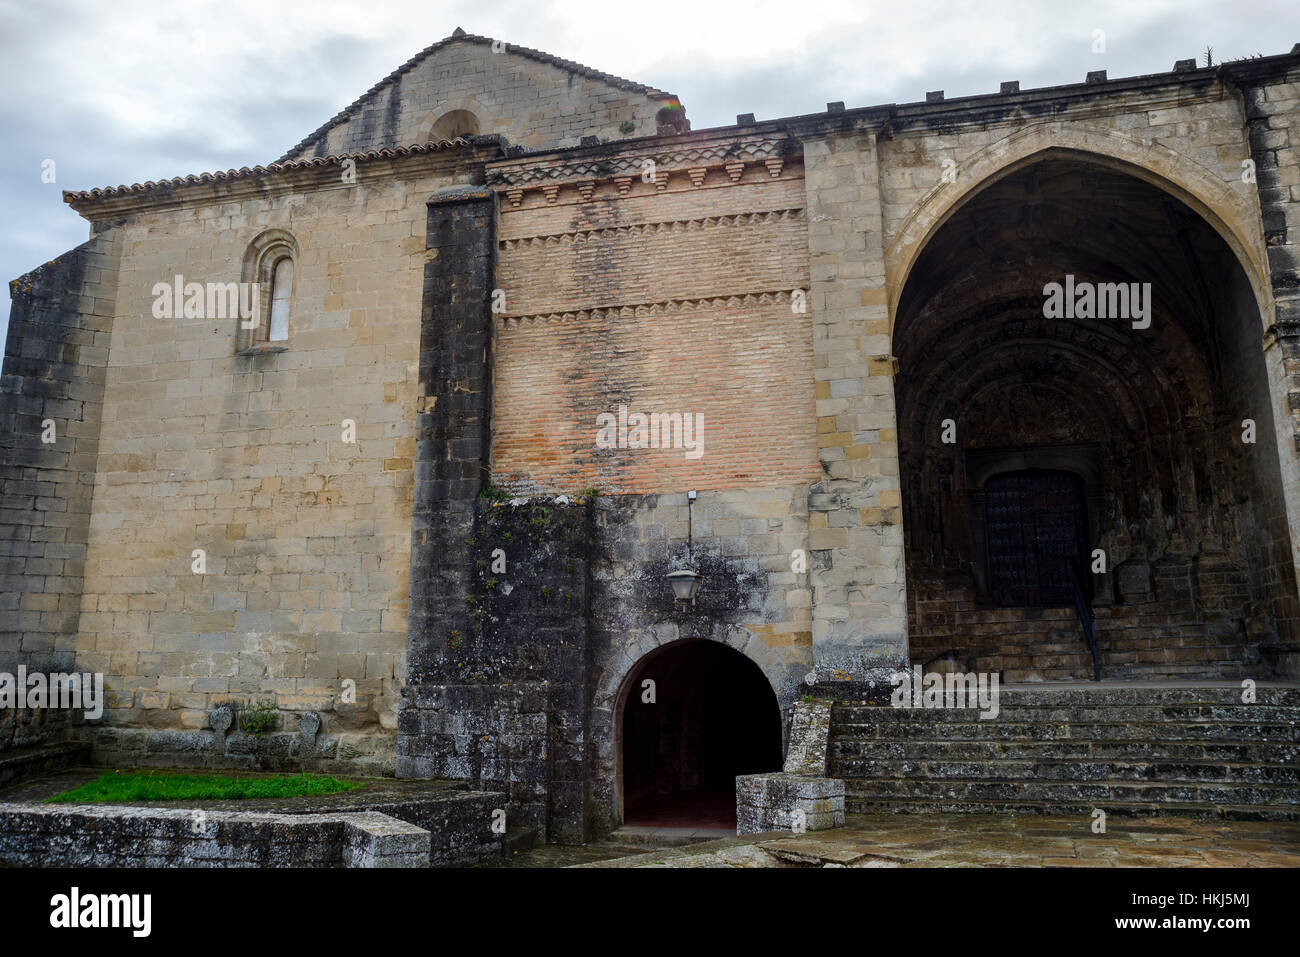 La chiesa-fortezza di San Esteban, in Sos del Rey Catolico, Saragozza, Aragona, orientale della Spagna. Fu costruita nel XII secolo in stile romanico Foto Stock